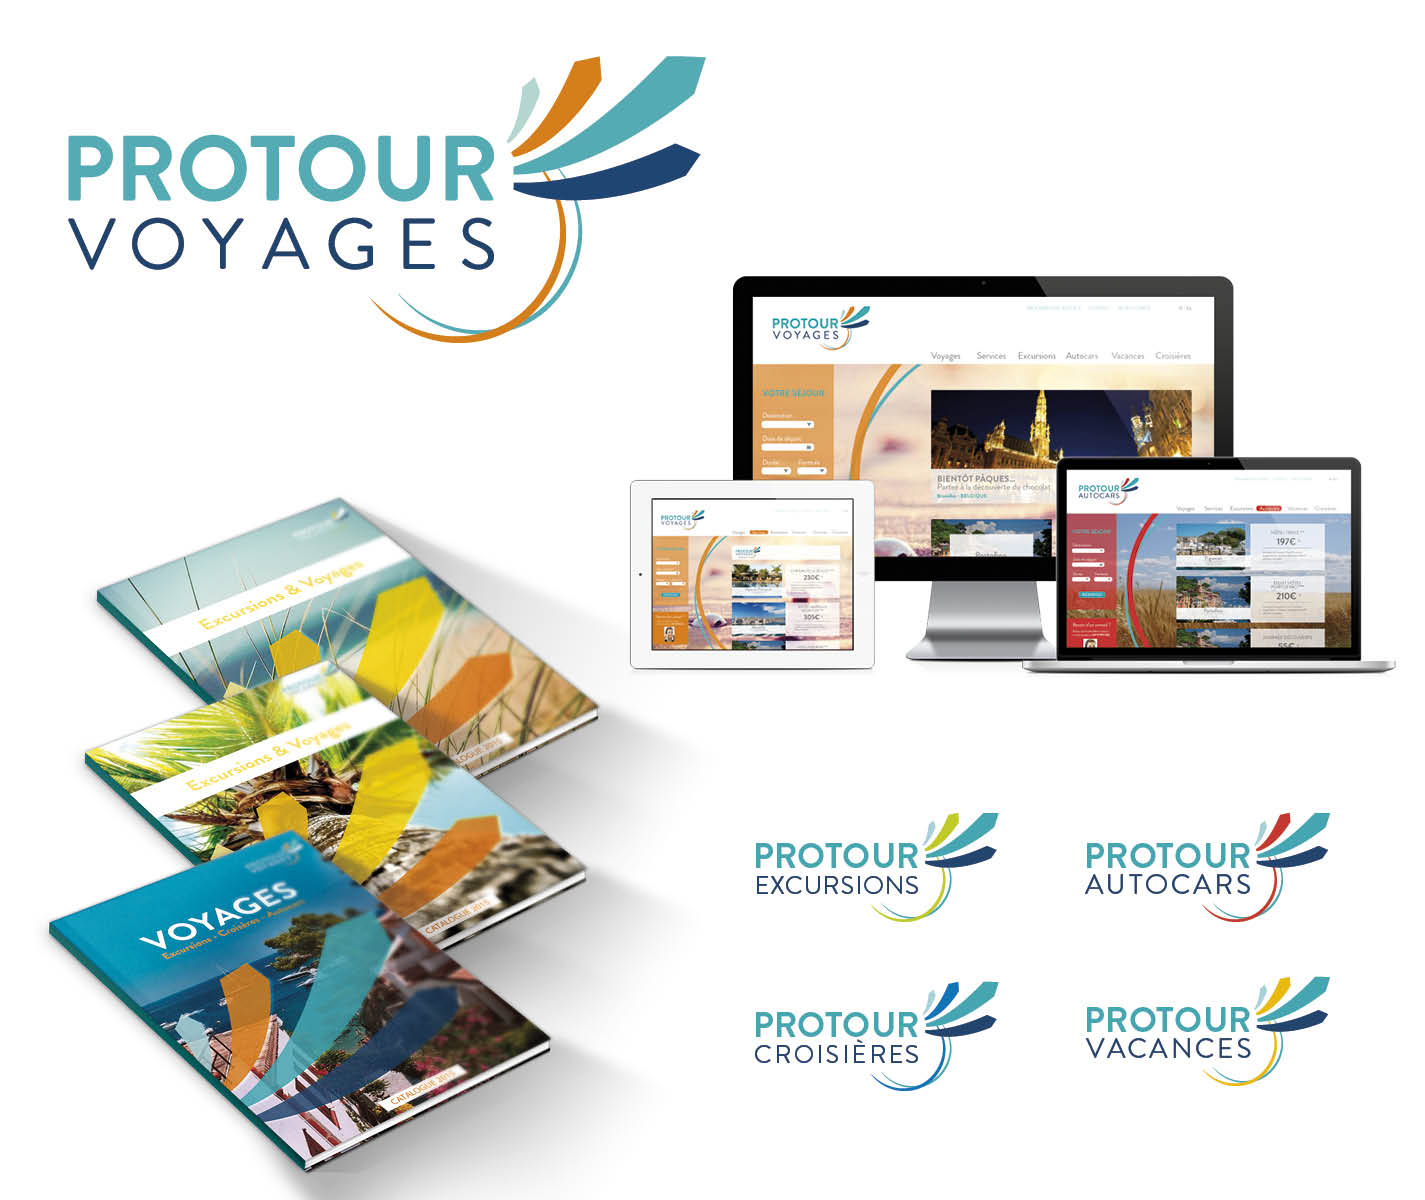 Protour Voyages - Branding